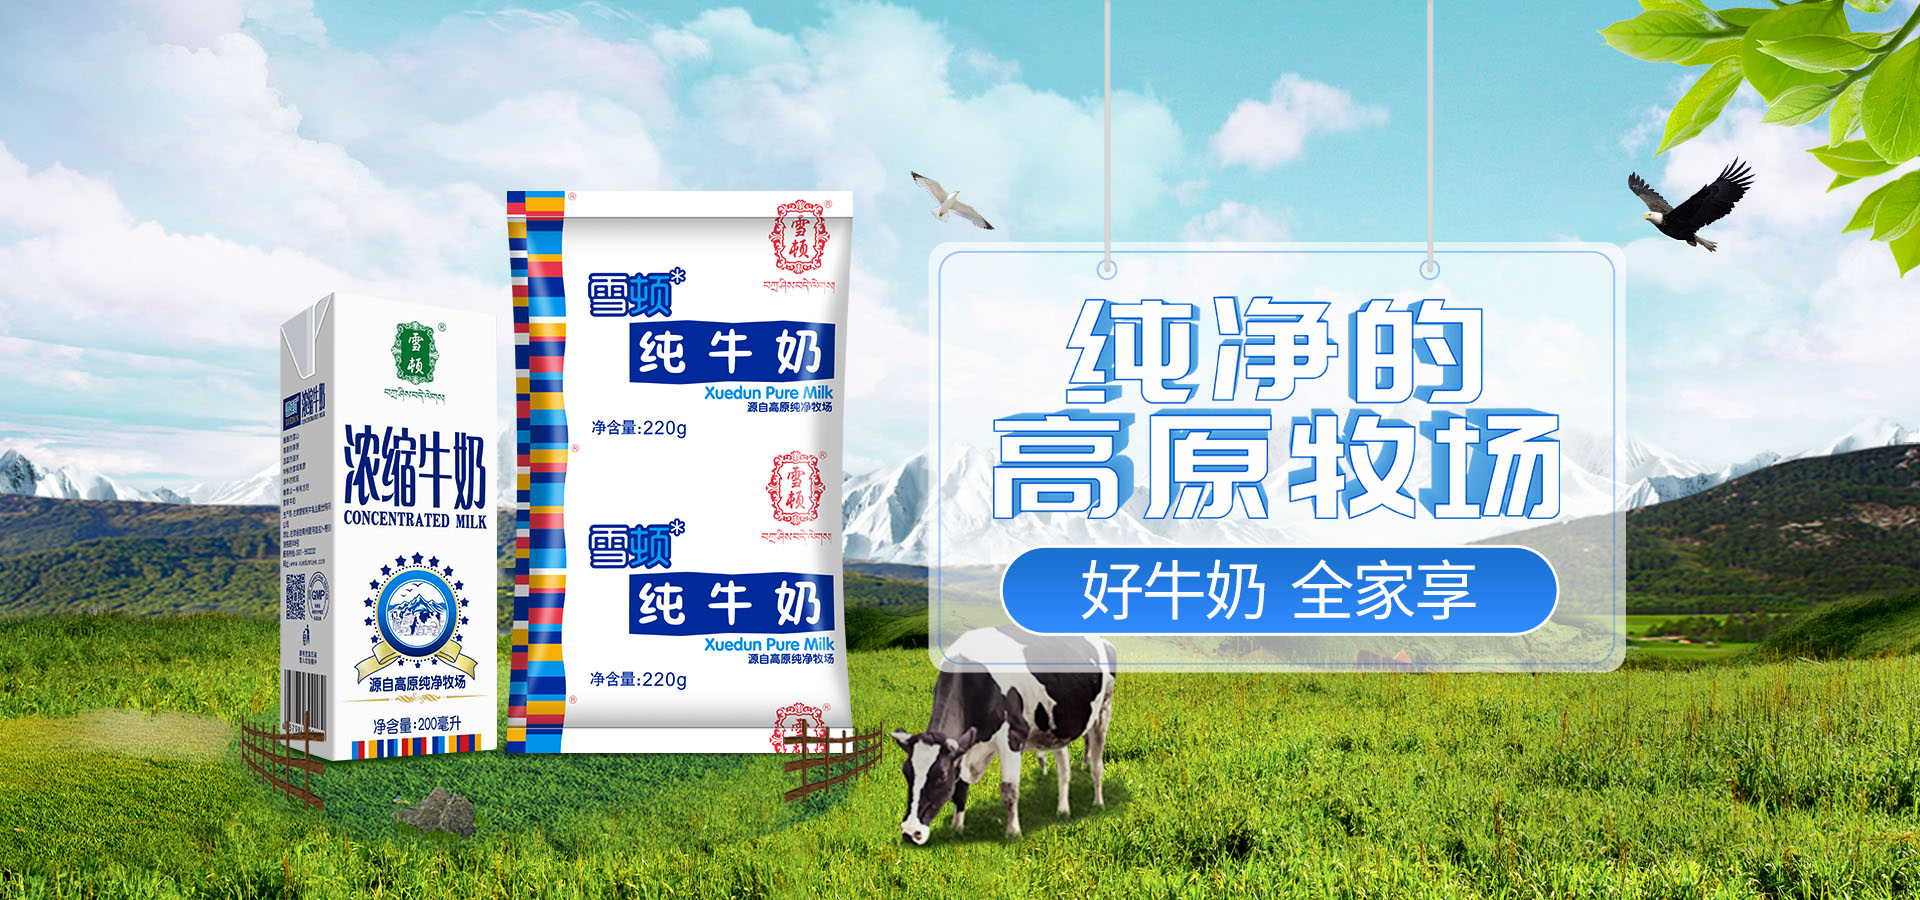 甘肃雪顿牦牛乳业股份有限公司首页大图